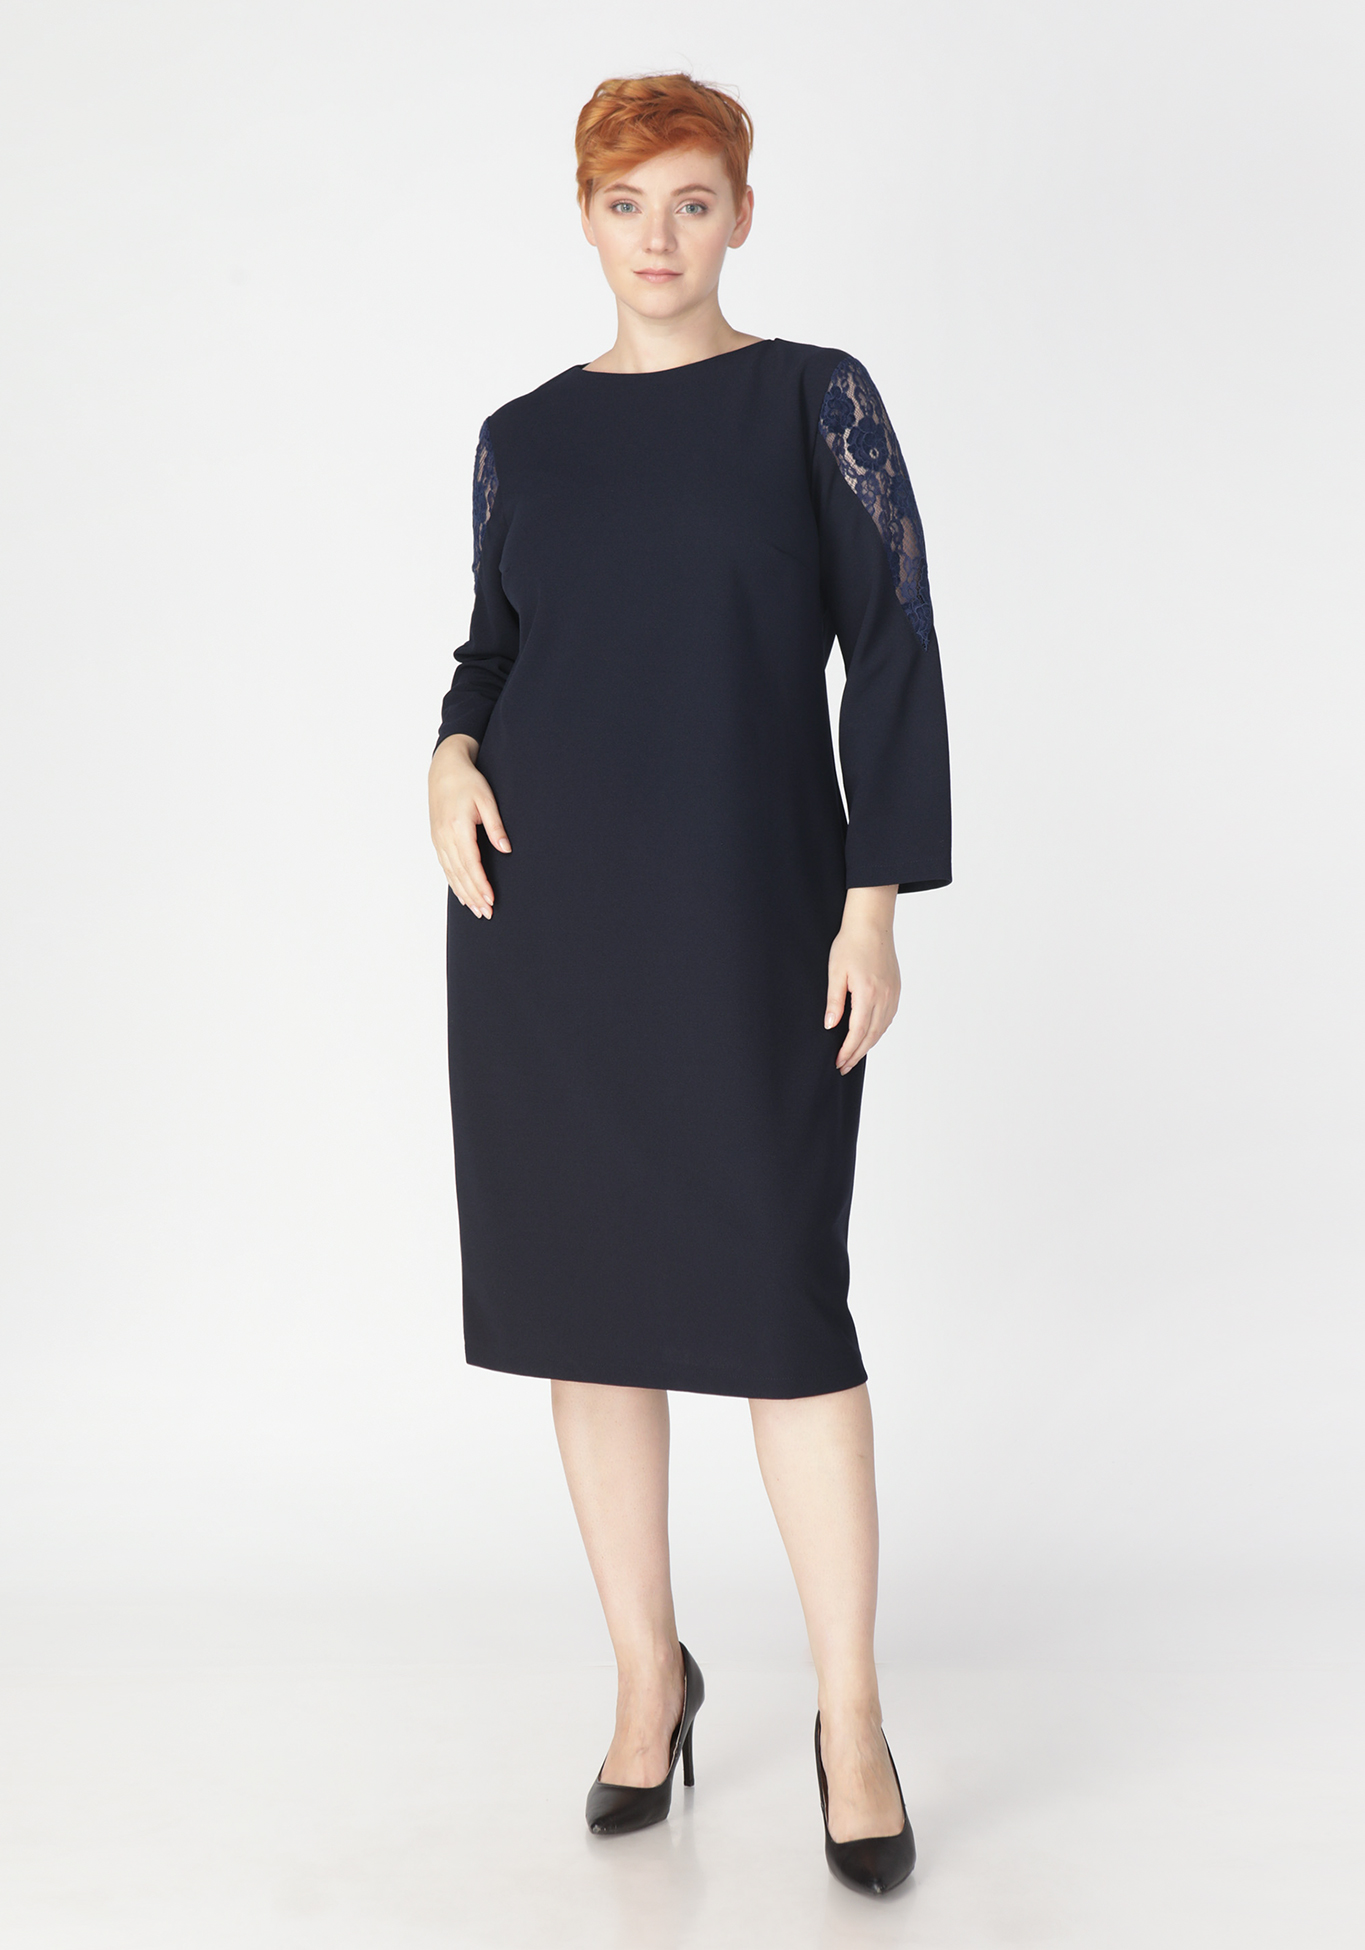 Платье «Огненный взгляд» Bianka Modeno, размер 50, цвет синий - фото 3